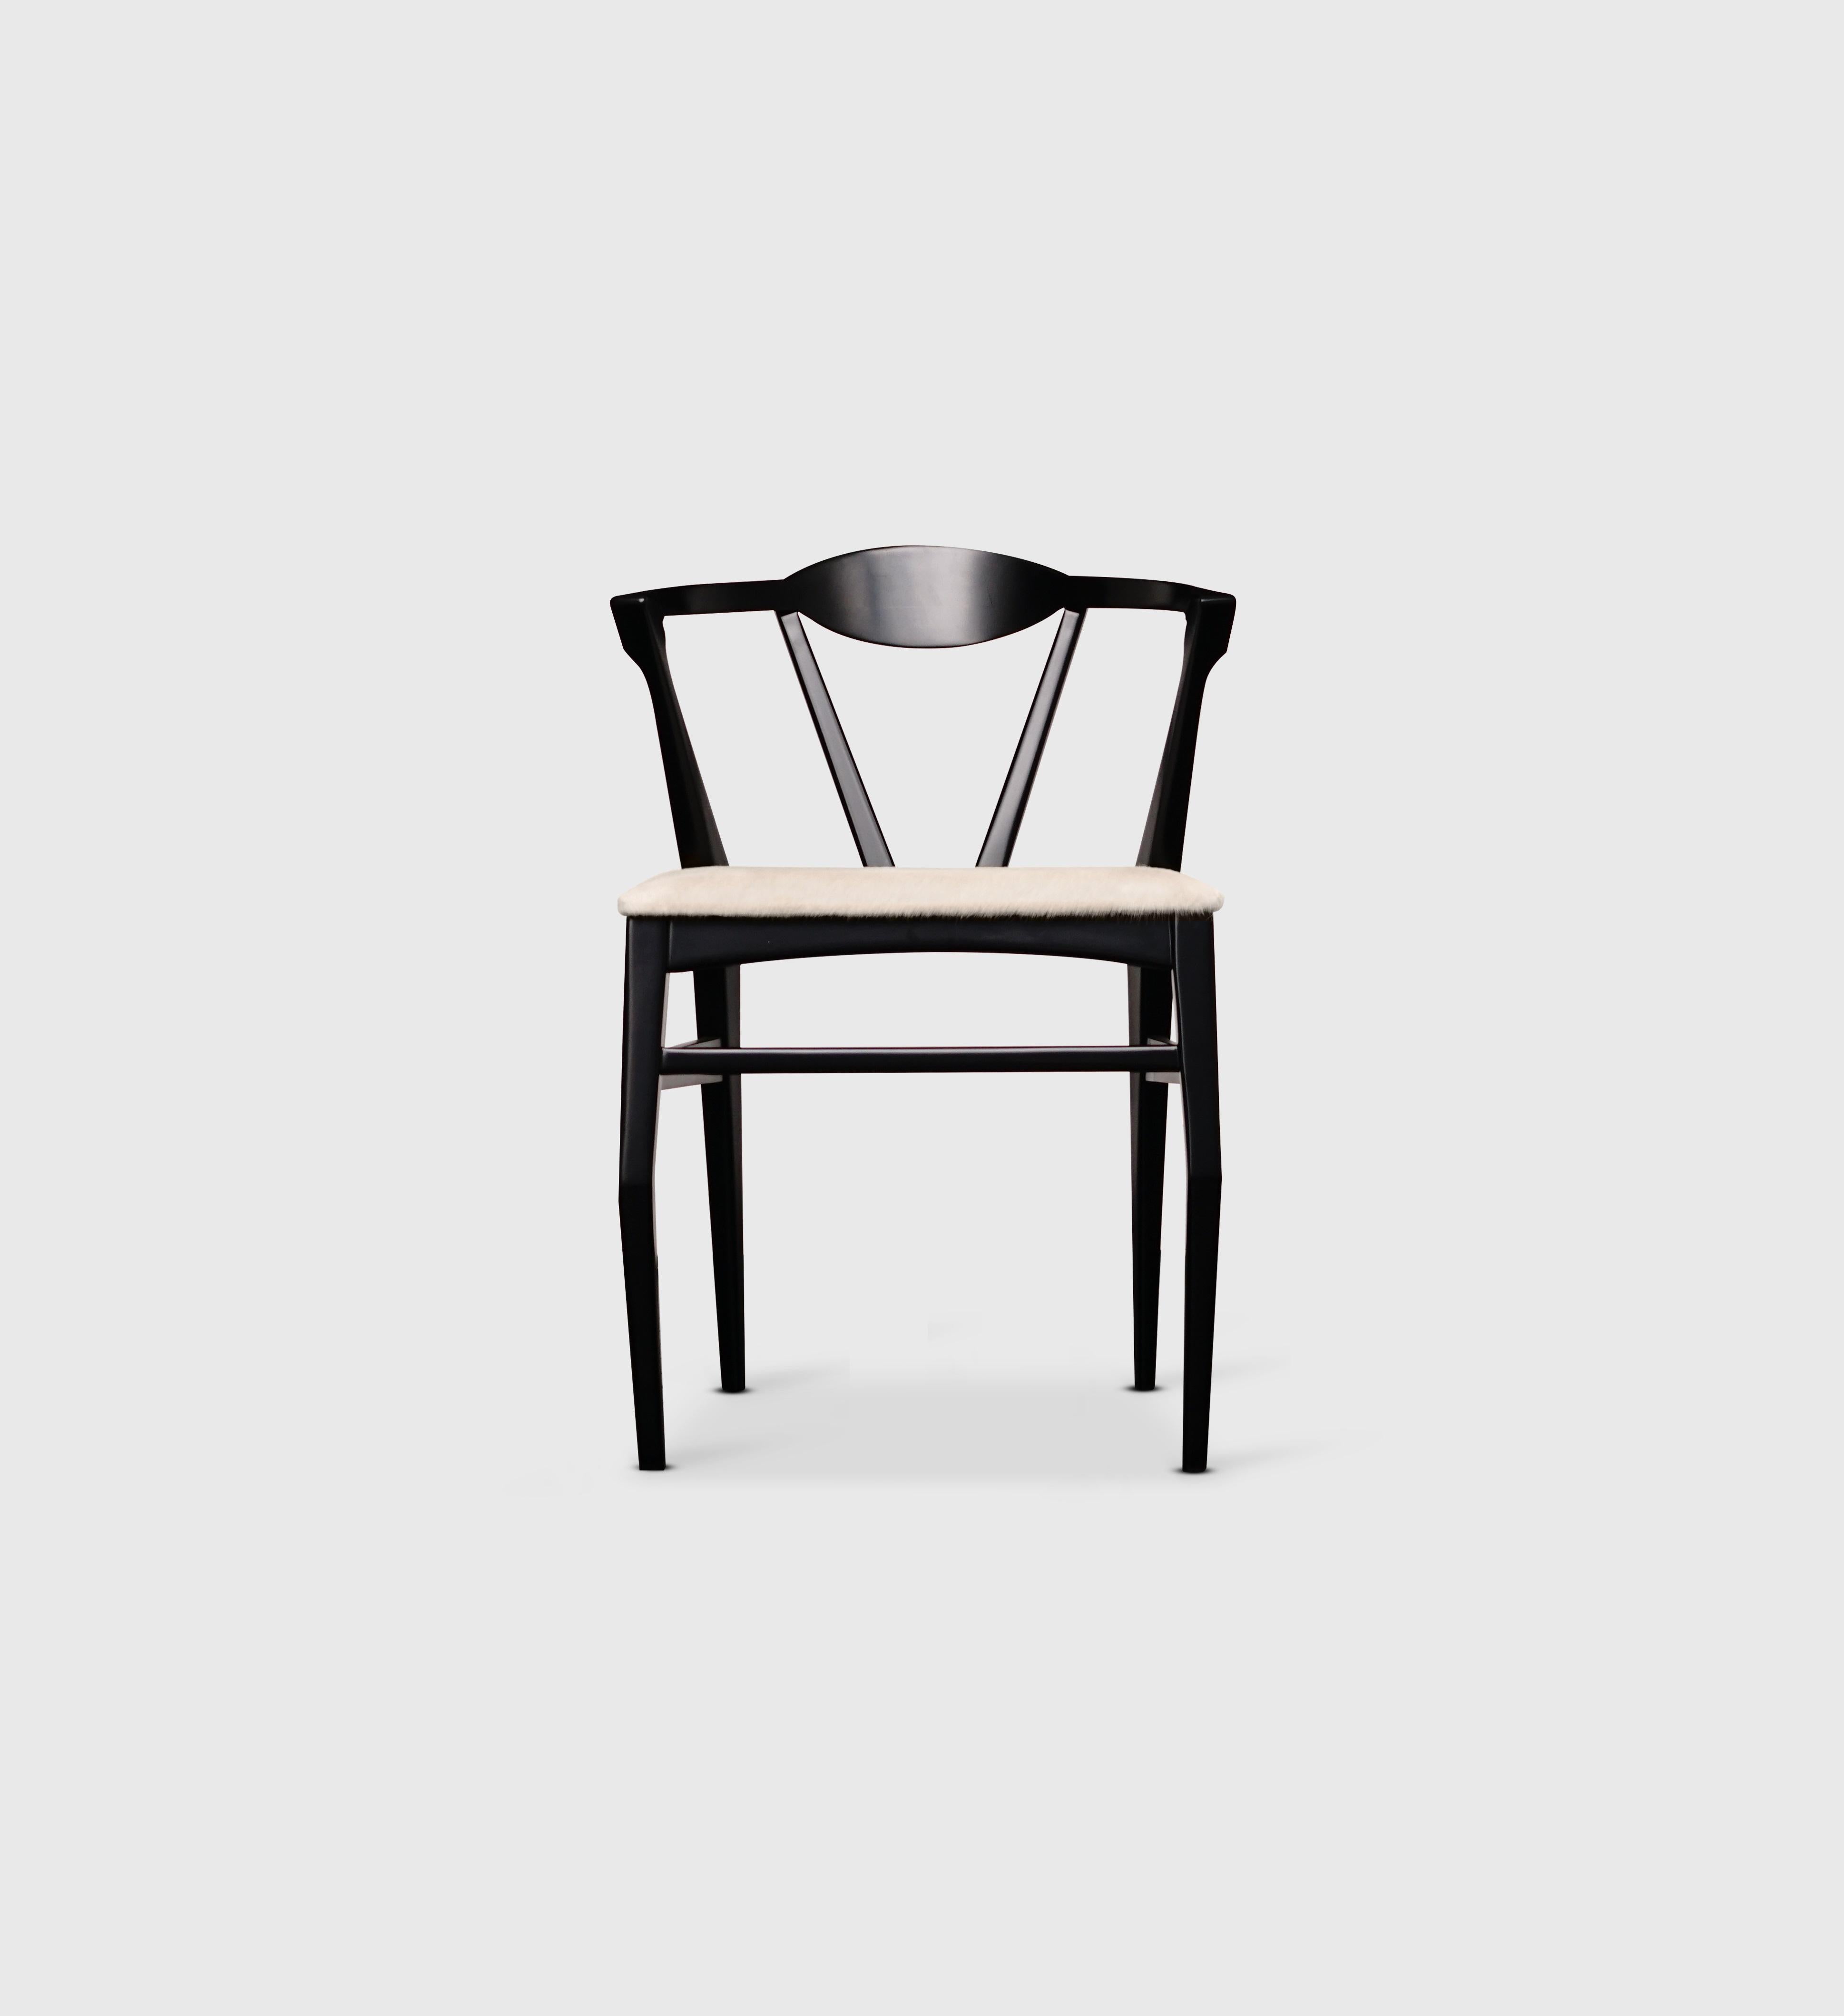 Chaise de salle à manger Arachnid d'Atra Design
Dimensions : D 93 x L 53 x H 84 cm
Matériaux : bois de noyer, tissu
Disponible en cuir, en rotin ou en tissu. Disponible dans un cadre en bois de noyer, hêtre, érable ou mohogamy.

Atra